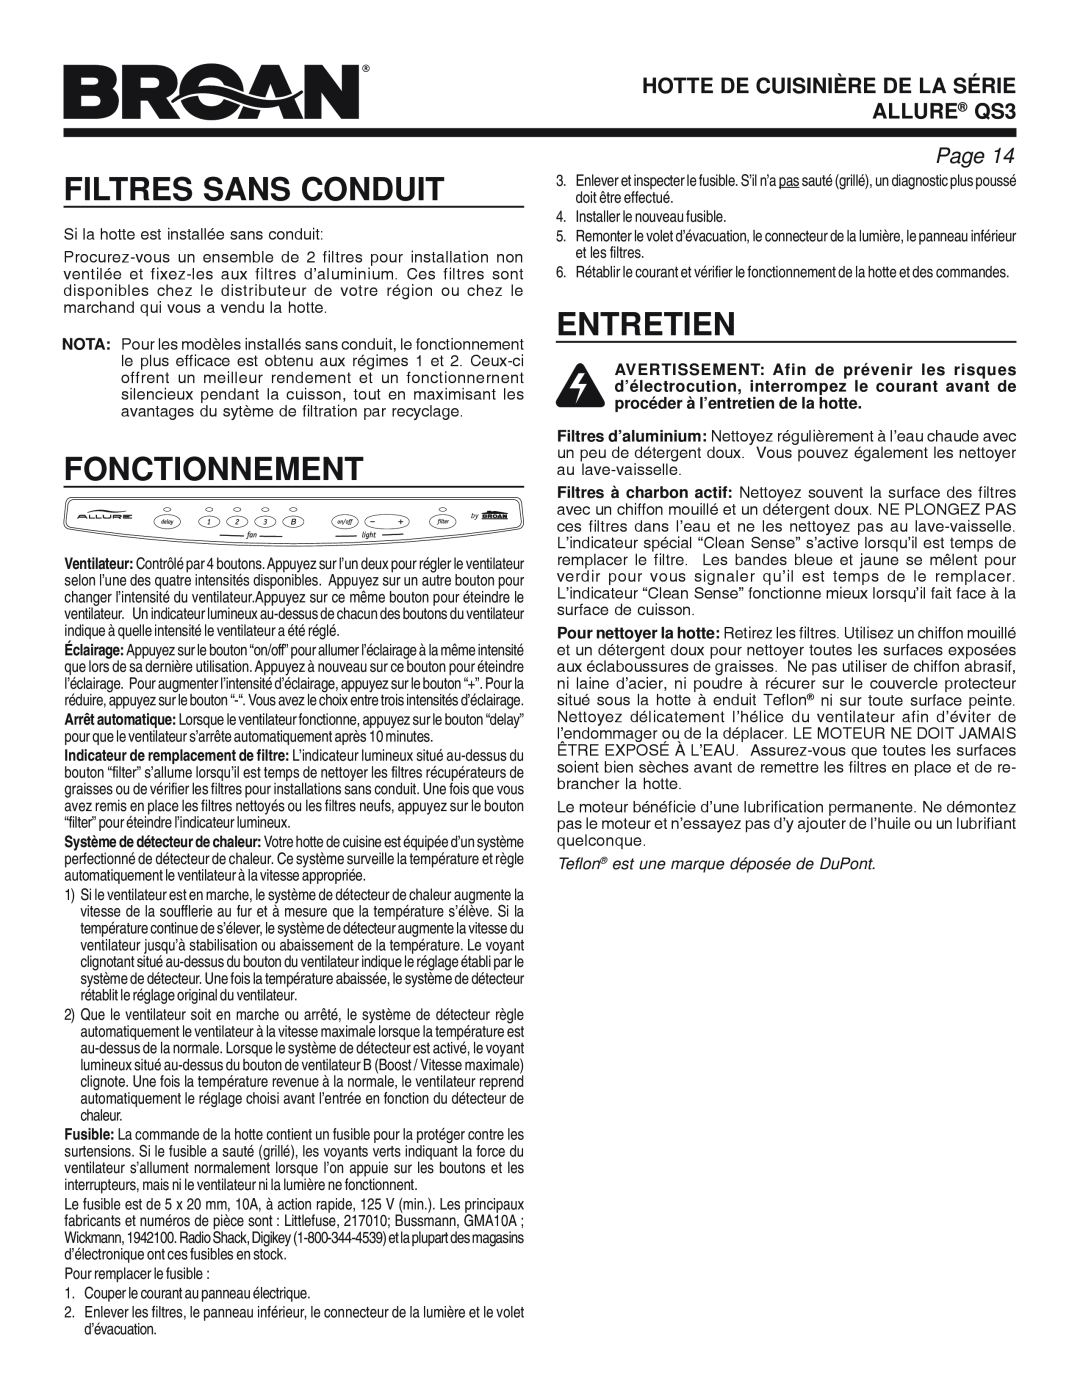 Broan QS3 SERIES manual Filtres Sans Conduit, Fonctionnement, Entretien, HOTTE DE CUISINIÈRE DE LA SÉRIE ALLURE QS3, Page 